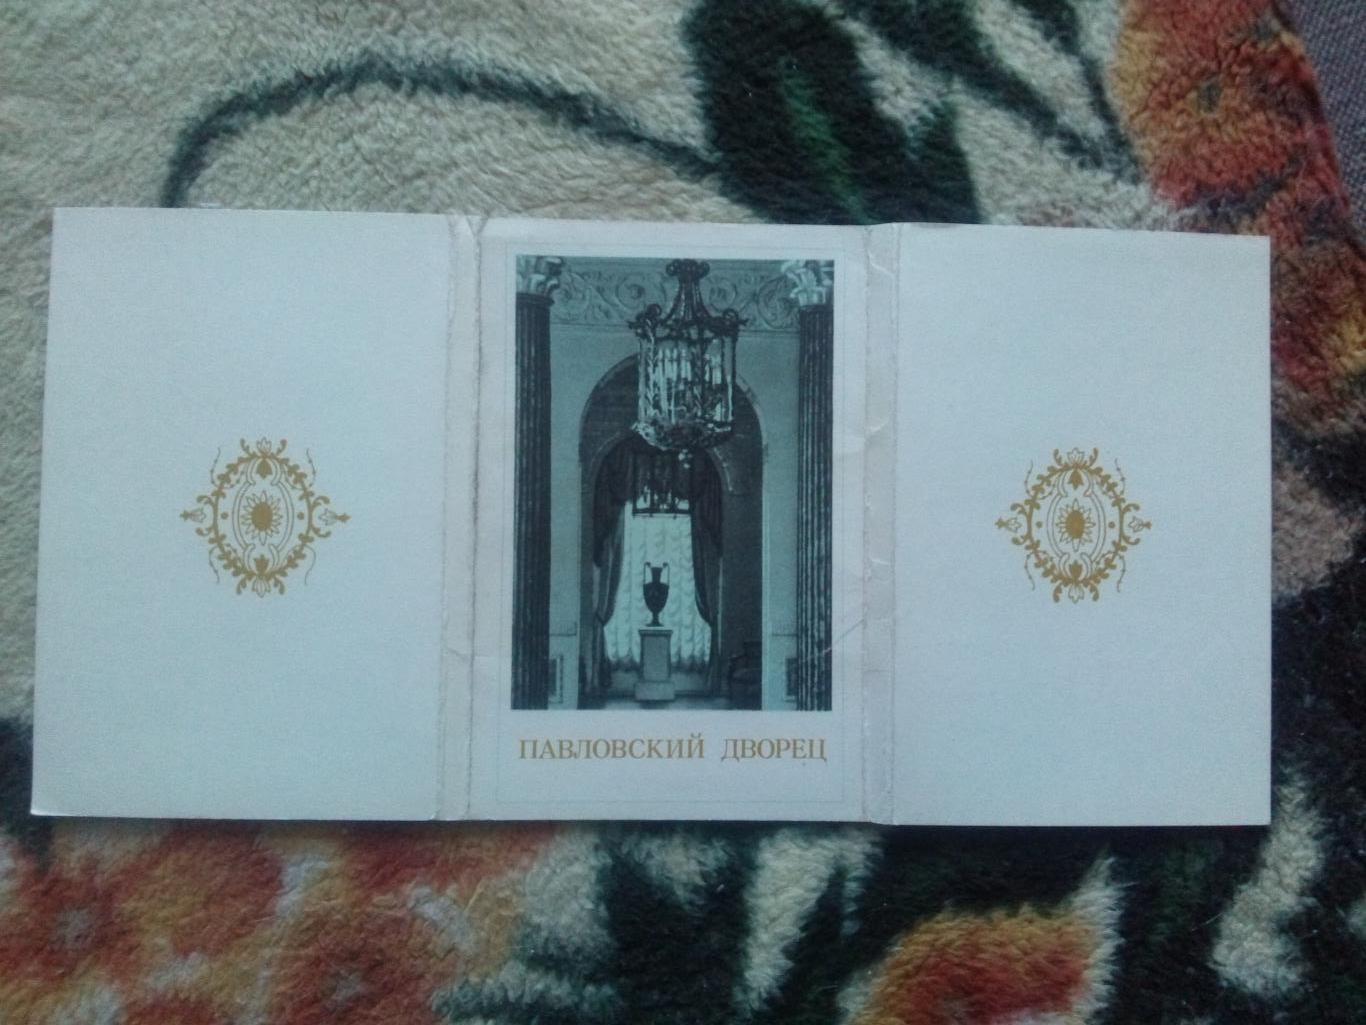 Павловский дворец 1974 г. полный набор - 15 открыток (Ленинград Павловск) чистые 1